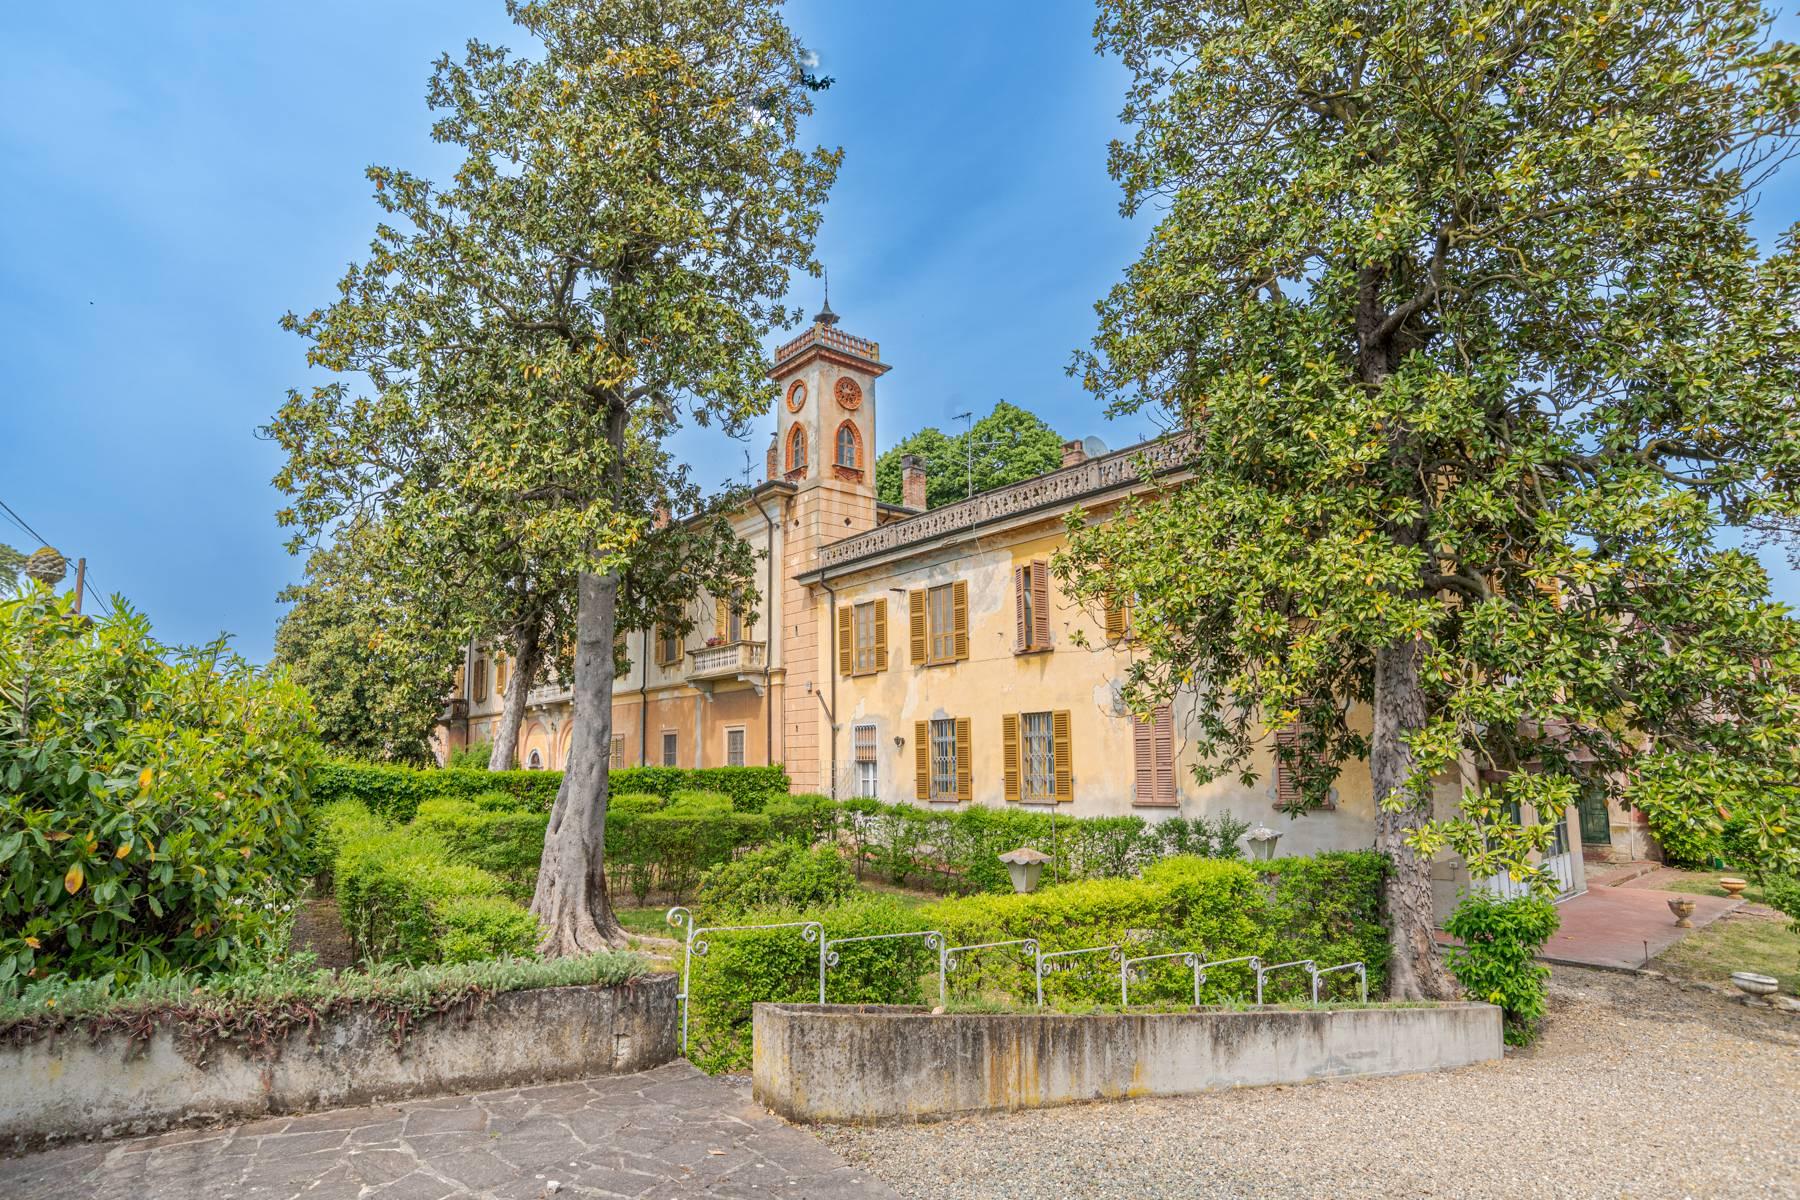 Cascina Bella - Villa du 18ème siècle avec parc à Oltrepo' Pavese - 1